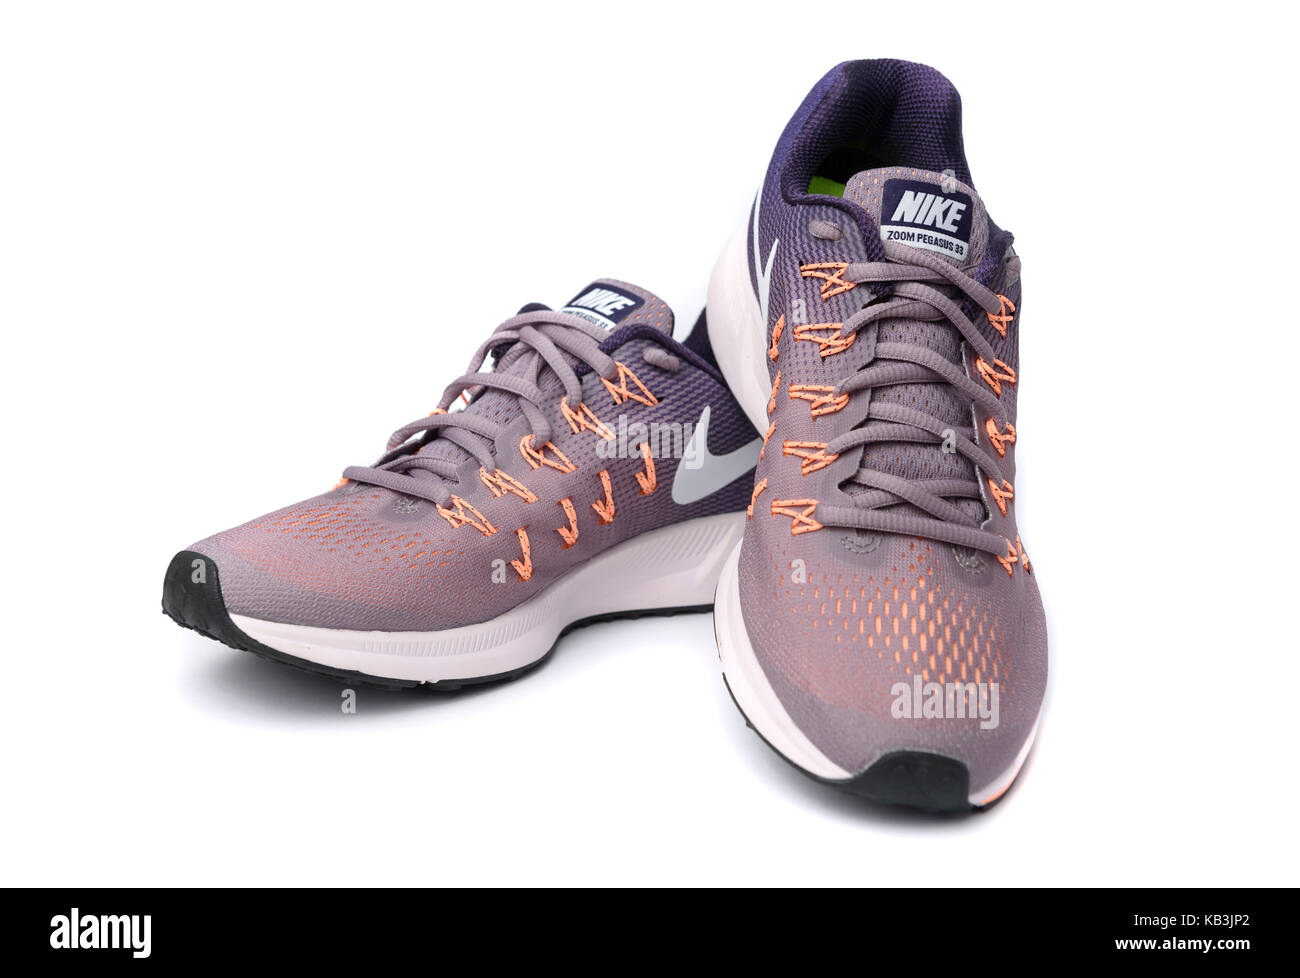 Lila und orange Nike Pegasus 33 Laufschuhe Ausschnitt auf weißem  Hintergrund Stockfotografie - Alamy